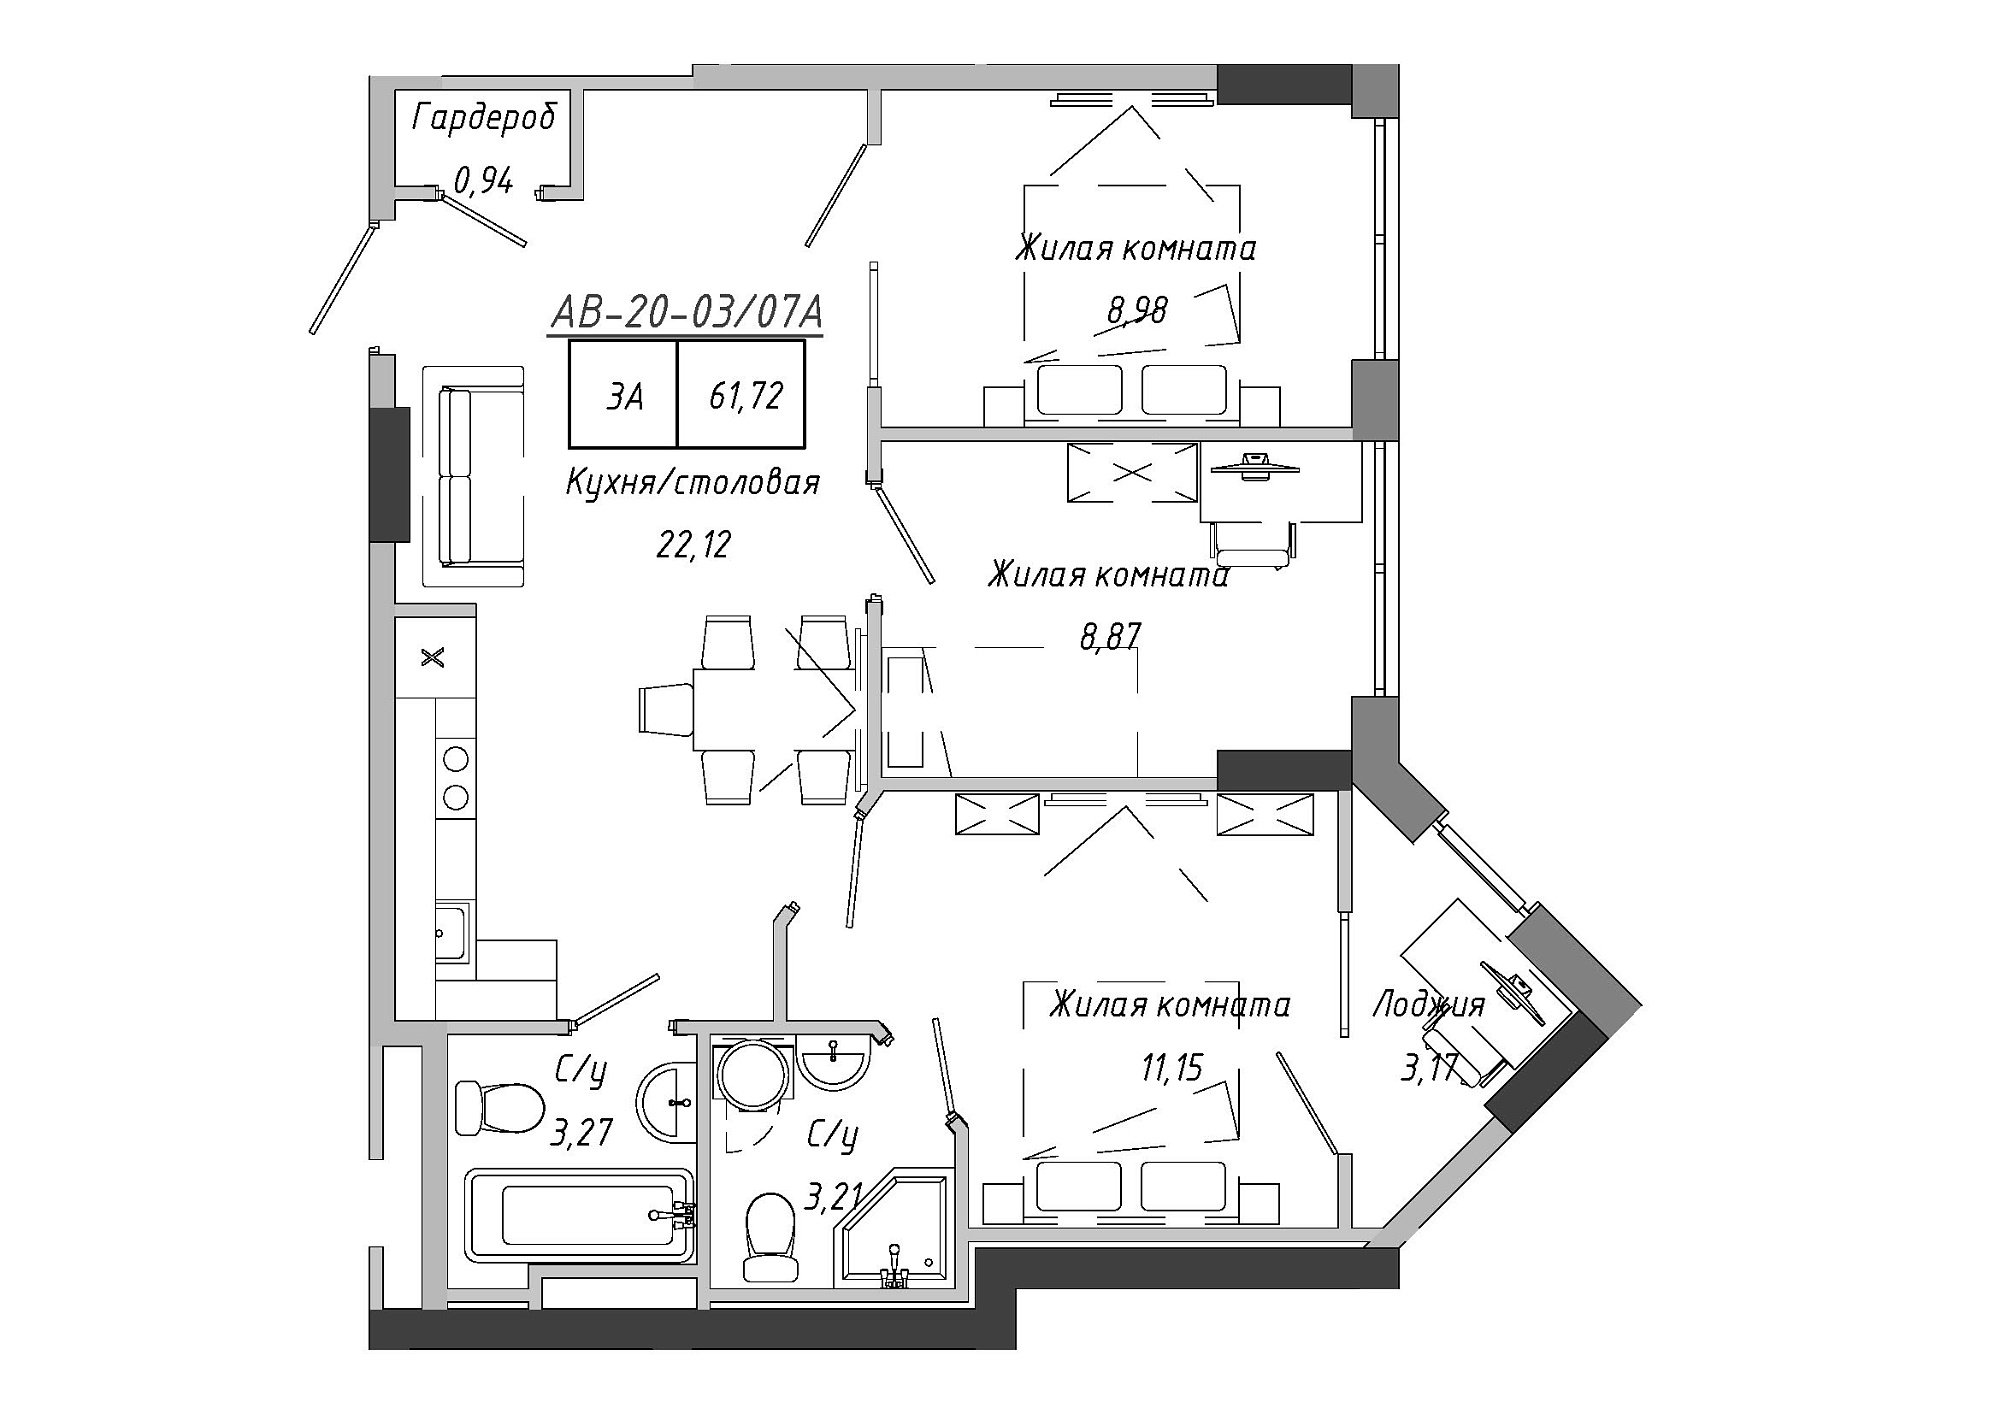 Планировка 3-к квартира площей 61.72м2, AB-20-03/0007а.